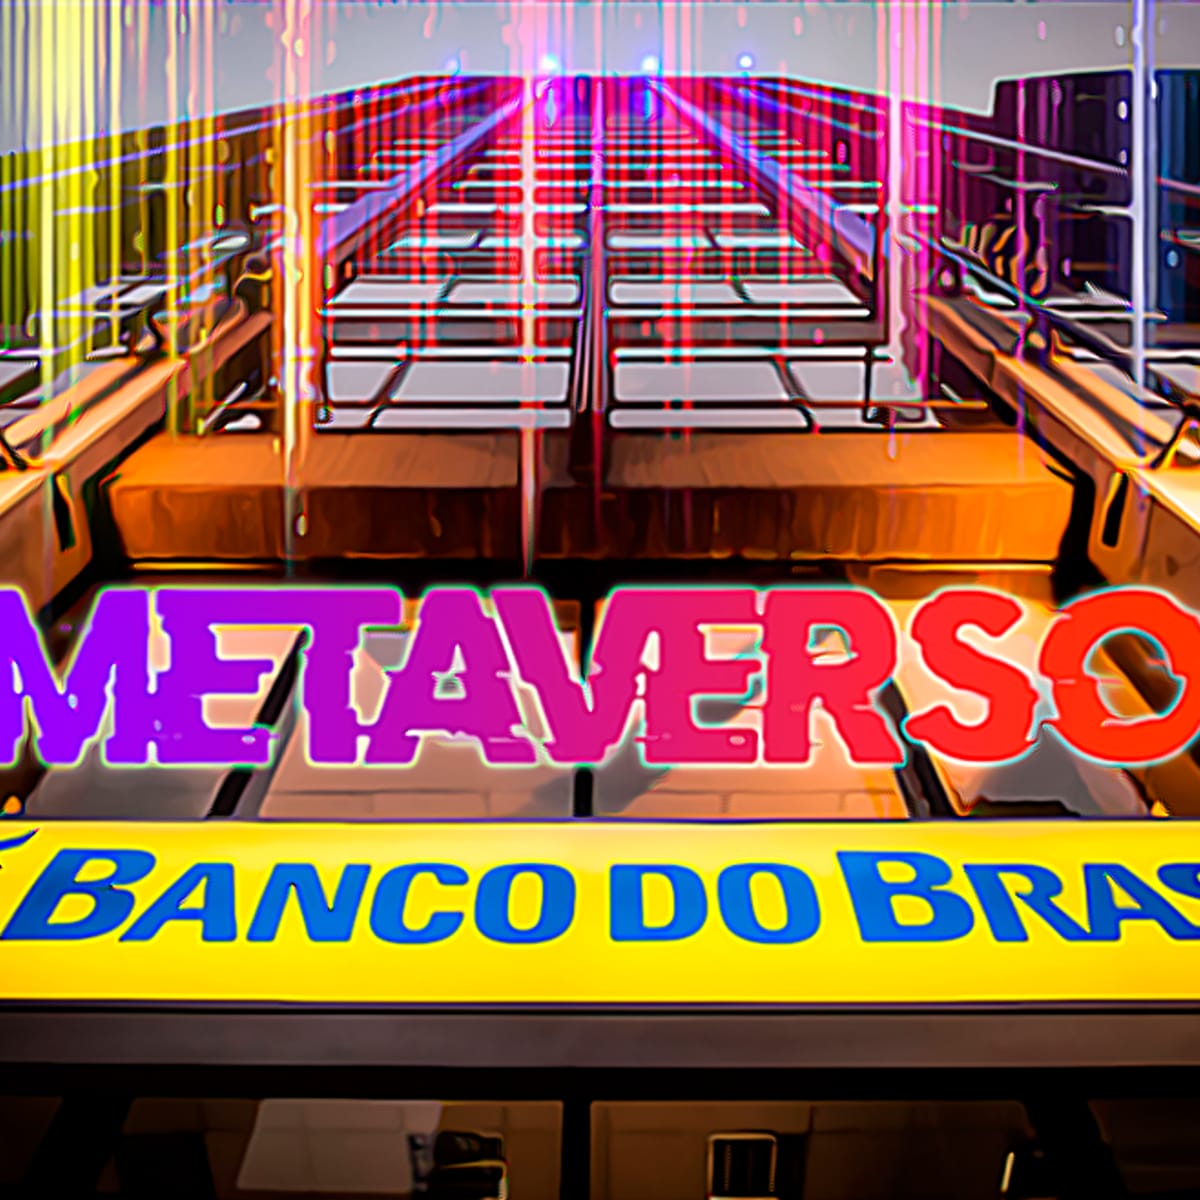 Banco do Brasil entra para o Metaverso com prédios virtuais no game GTA RP